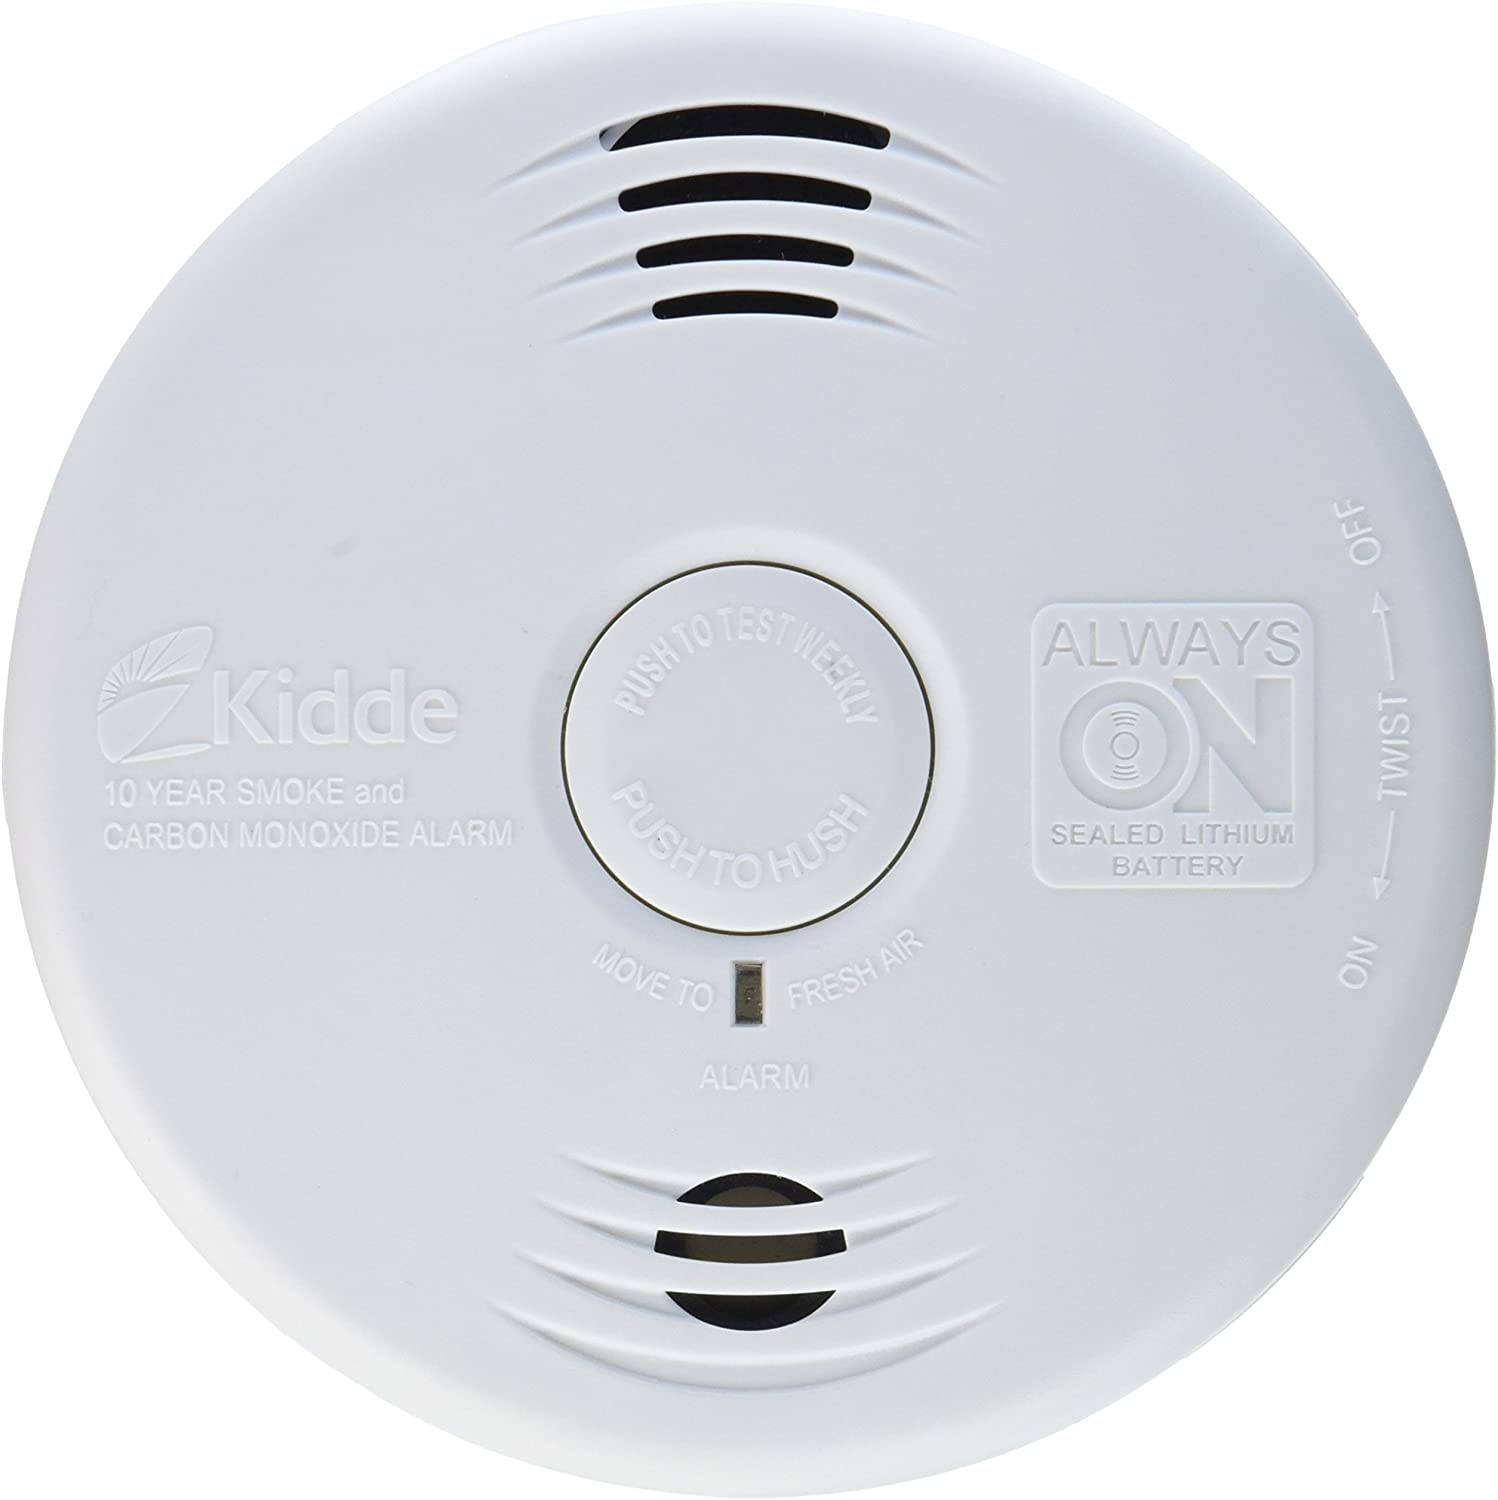 Kidde 21026065 Smoke & Carbon Monoxide Alarm